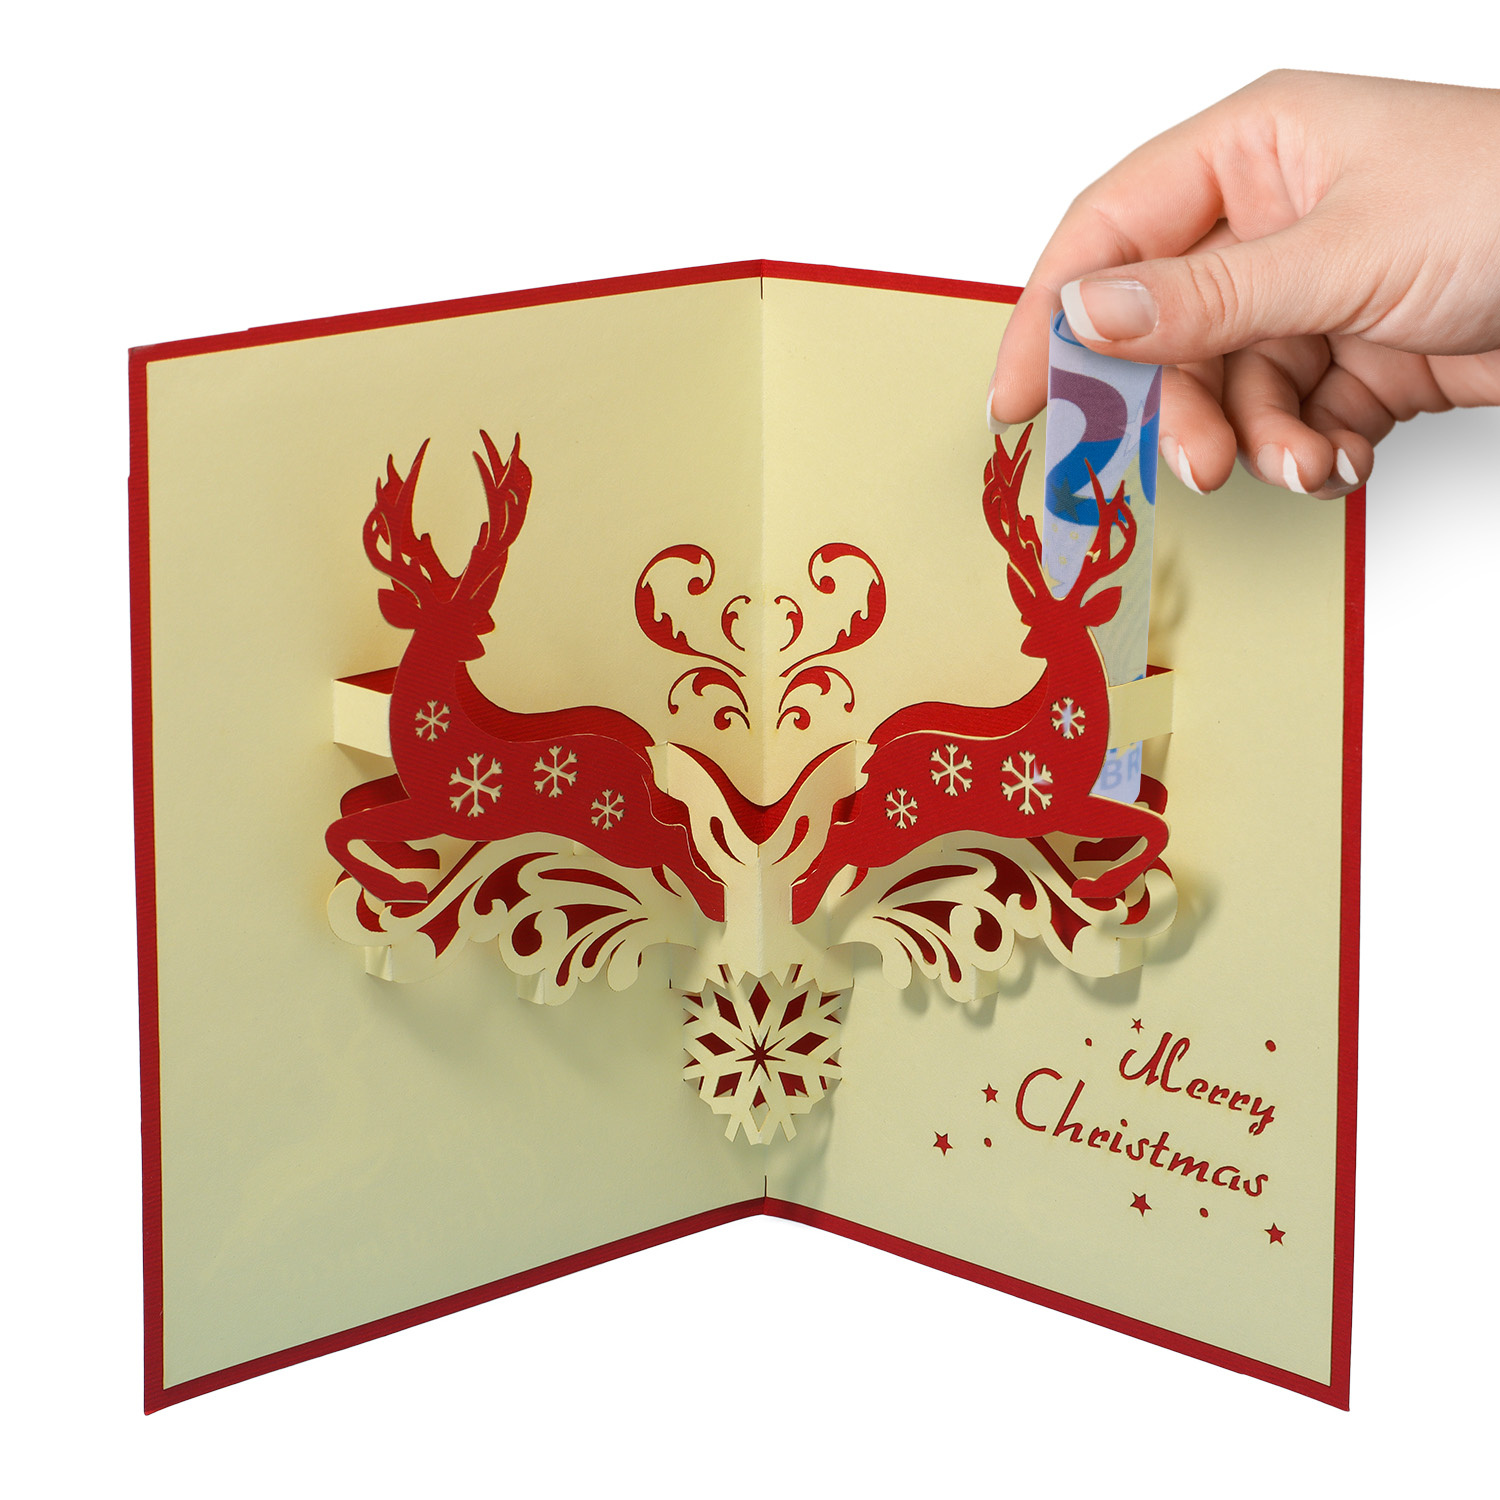 LINPOPUP Pop Up 3D Card, Christmas Card, Greetings Card, Deer, LIN17171, LINPopUp®, N429